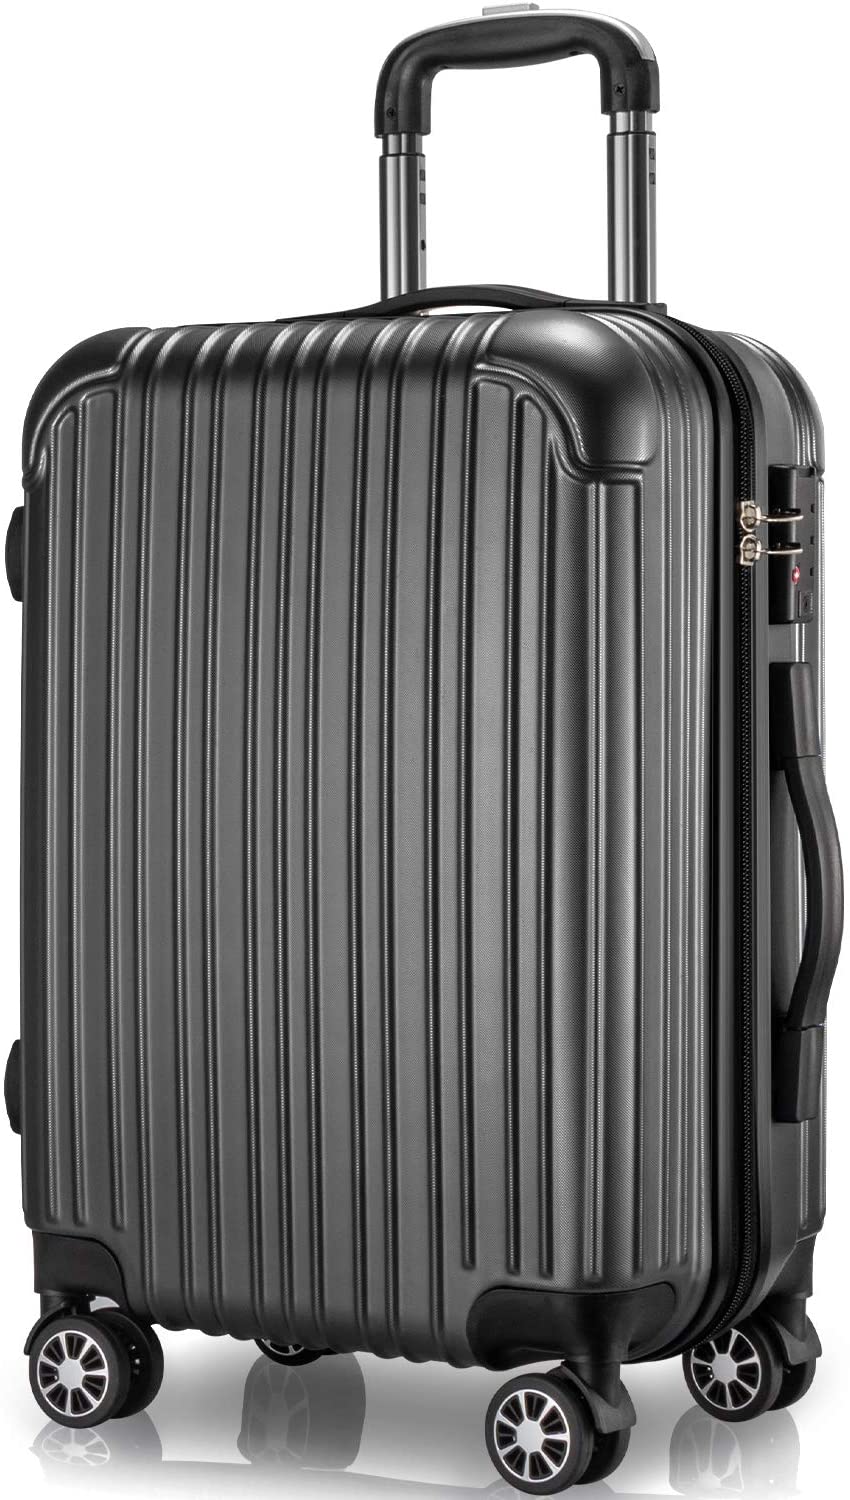 スーツケース 97L Lサイズ 7〜14泊 キャリーケース キャリーバッグ